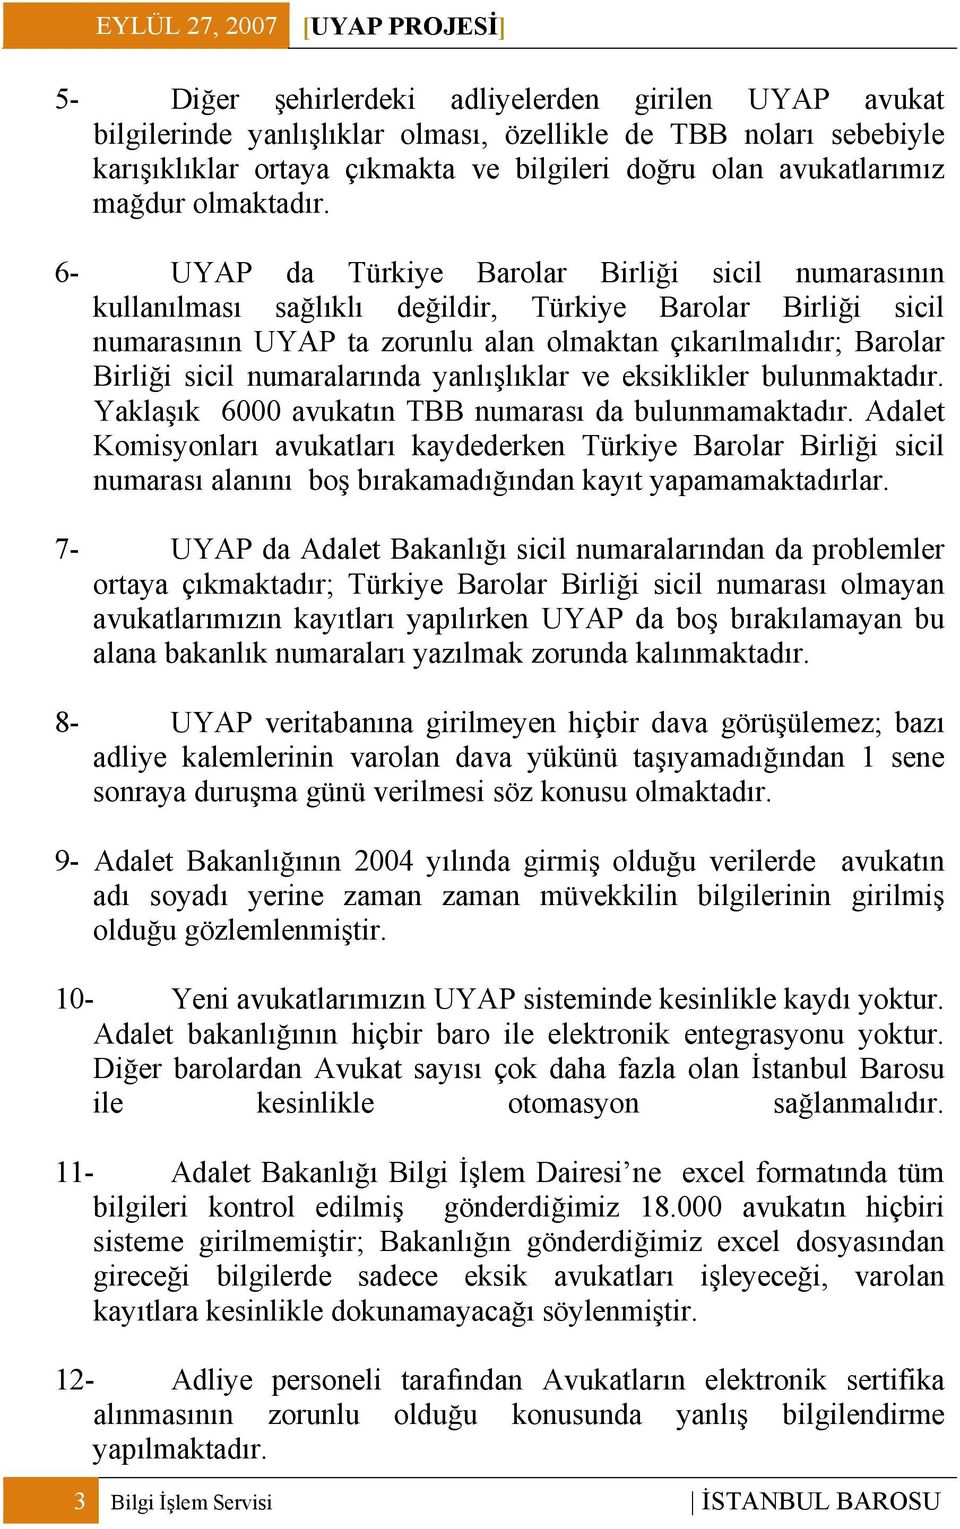 6- UYAP da Türkiye Barolar Birliği sicil numarasının kullanılması sağlıklı değildir, Türkiye Barolar Birliği sicil numarasının UYAP ta zorunlu alan olmaktan çıkarılmalıdır; Barolar Birliği sicil